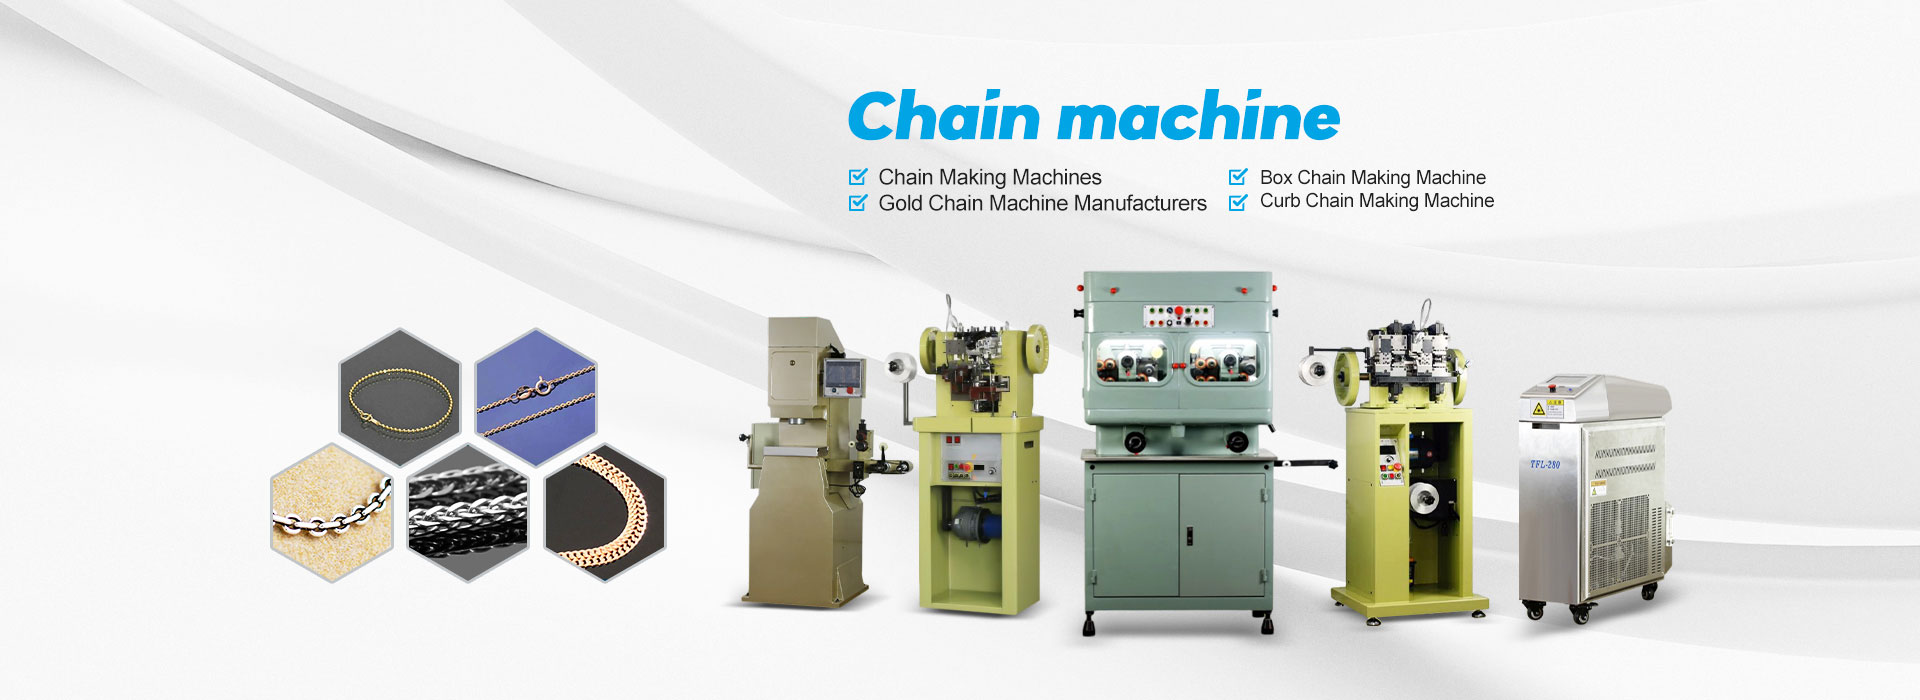 Chain Machine Factory